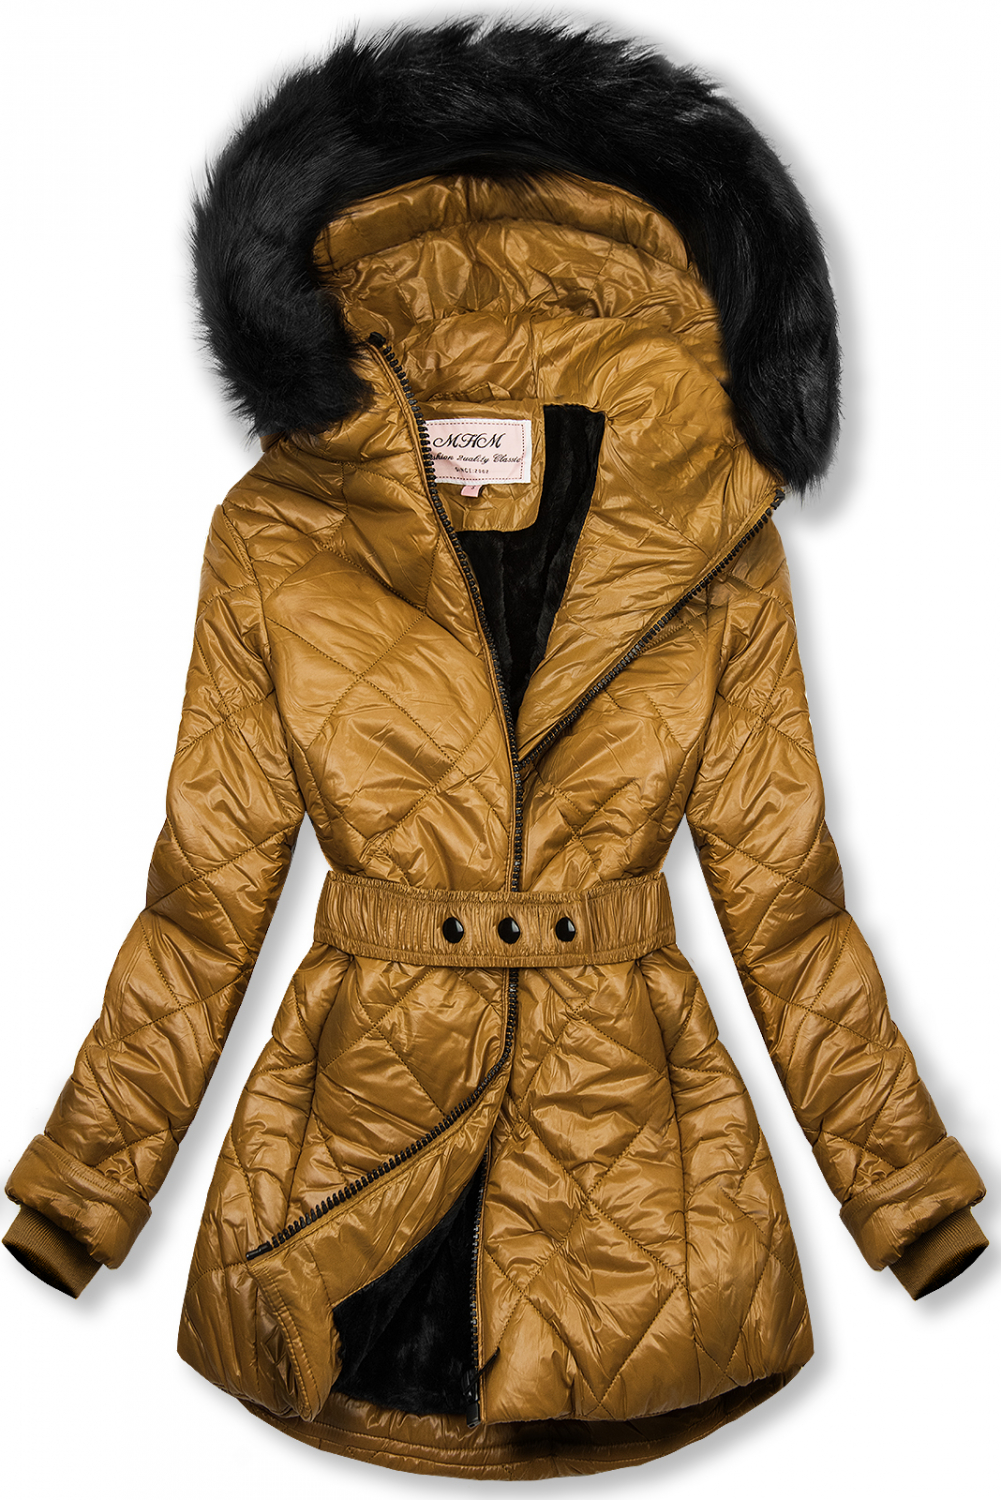 Karamelová lesklá zimná bunda s opaskom.
- neodopínateľná kapucňa
- odnímateľná kožušina
- zapínanie na zips
- v prednej časti 2 vrecká 
- vnútro zateplené plyšom
- s opaskom
- materiál: 100% polyester, podšívka: 100% polyester
 